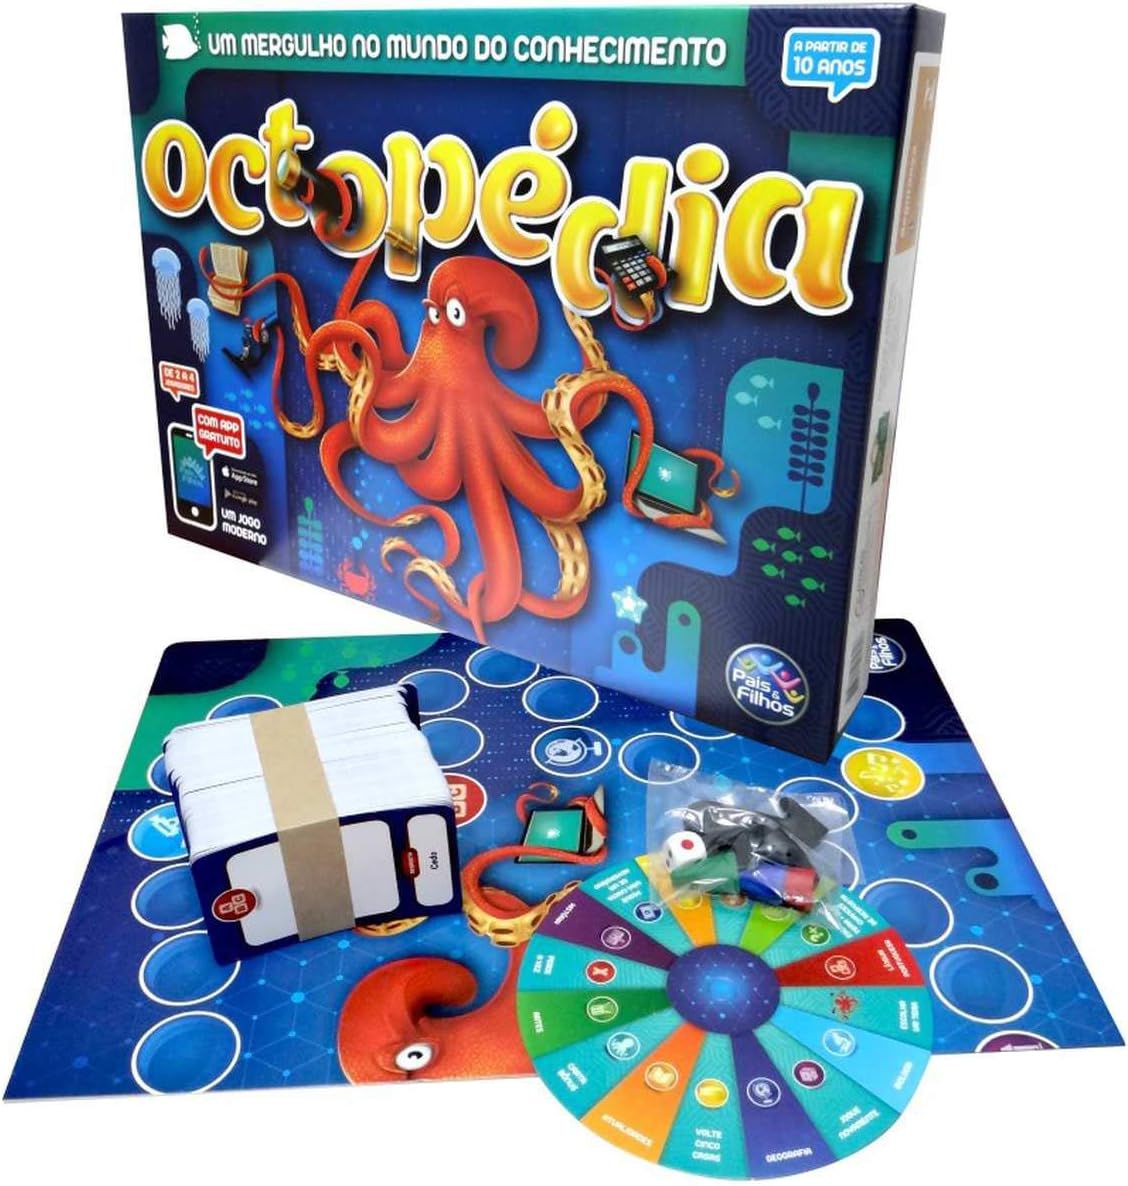 Jogo da Memória Polly - Mattel - Jogos de Memória e Conhecimento